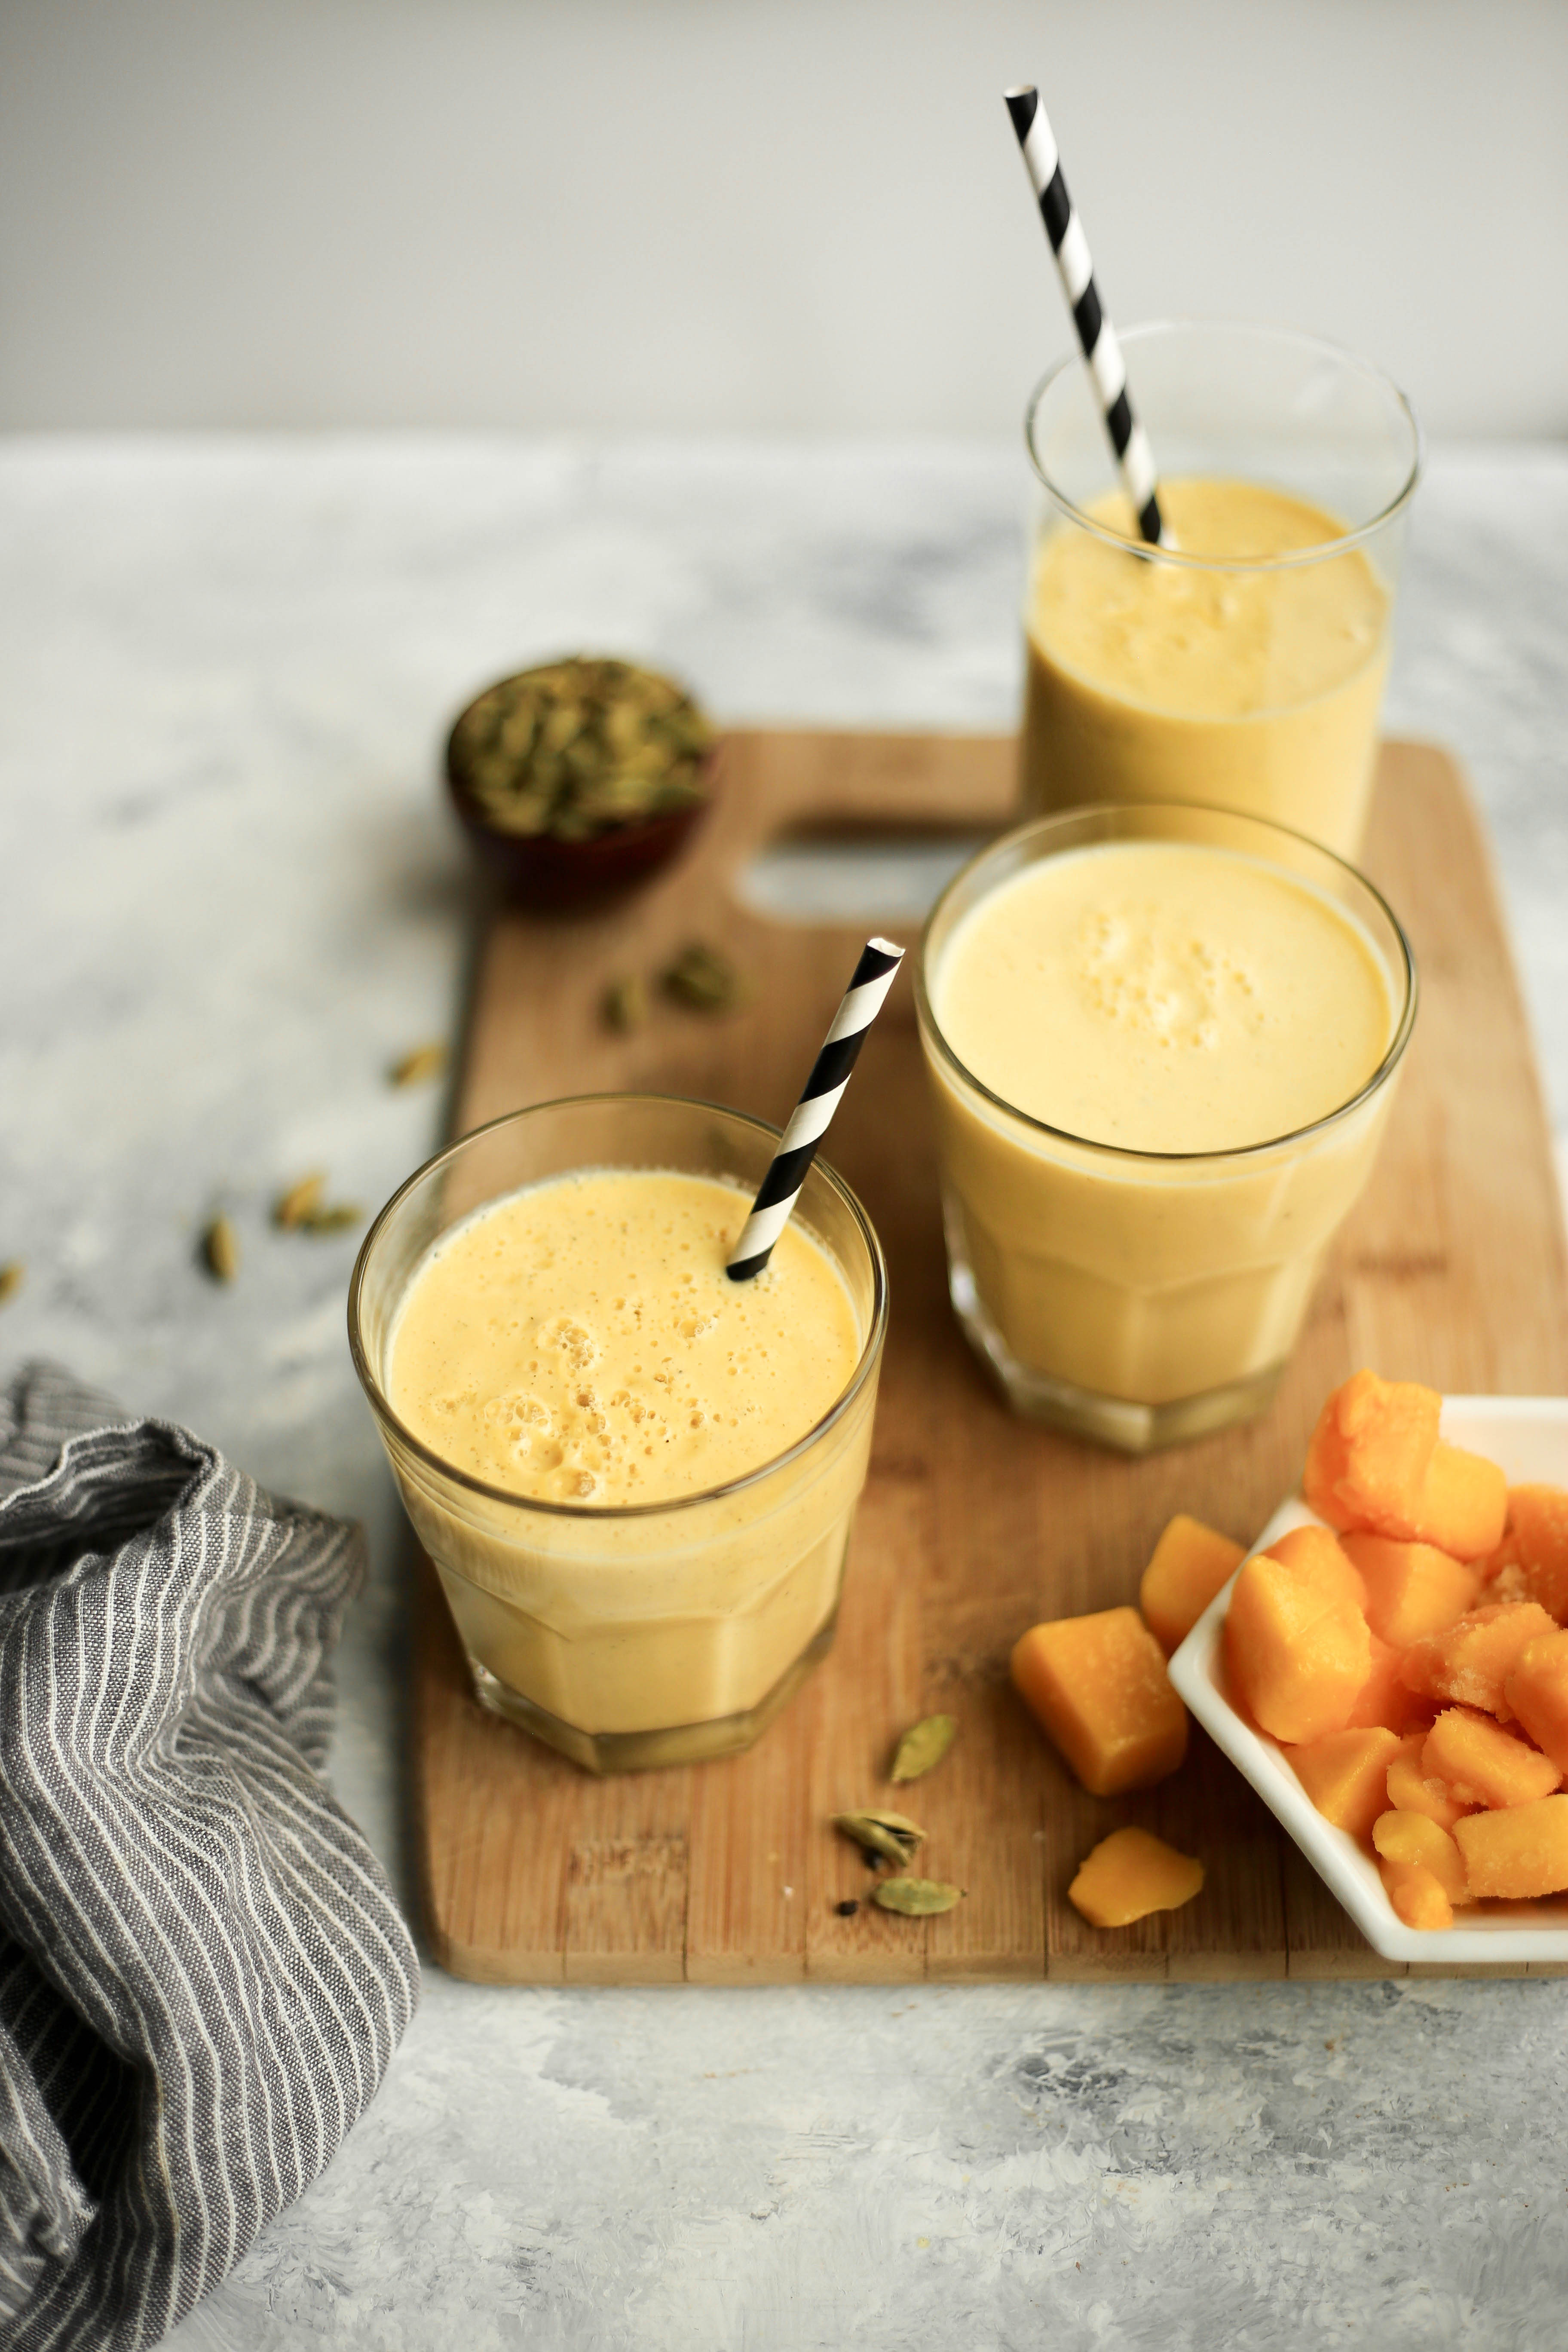 salty mango lassi - a refreshing summer drink with mango, black salt, yogurt, and cardamom